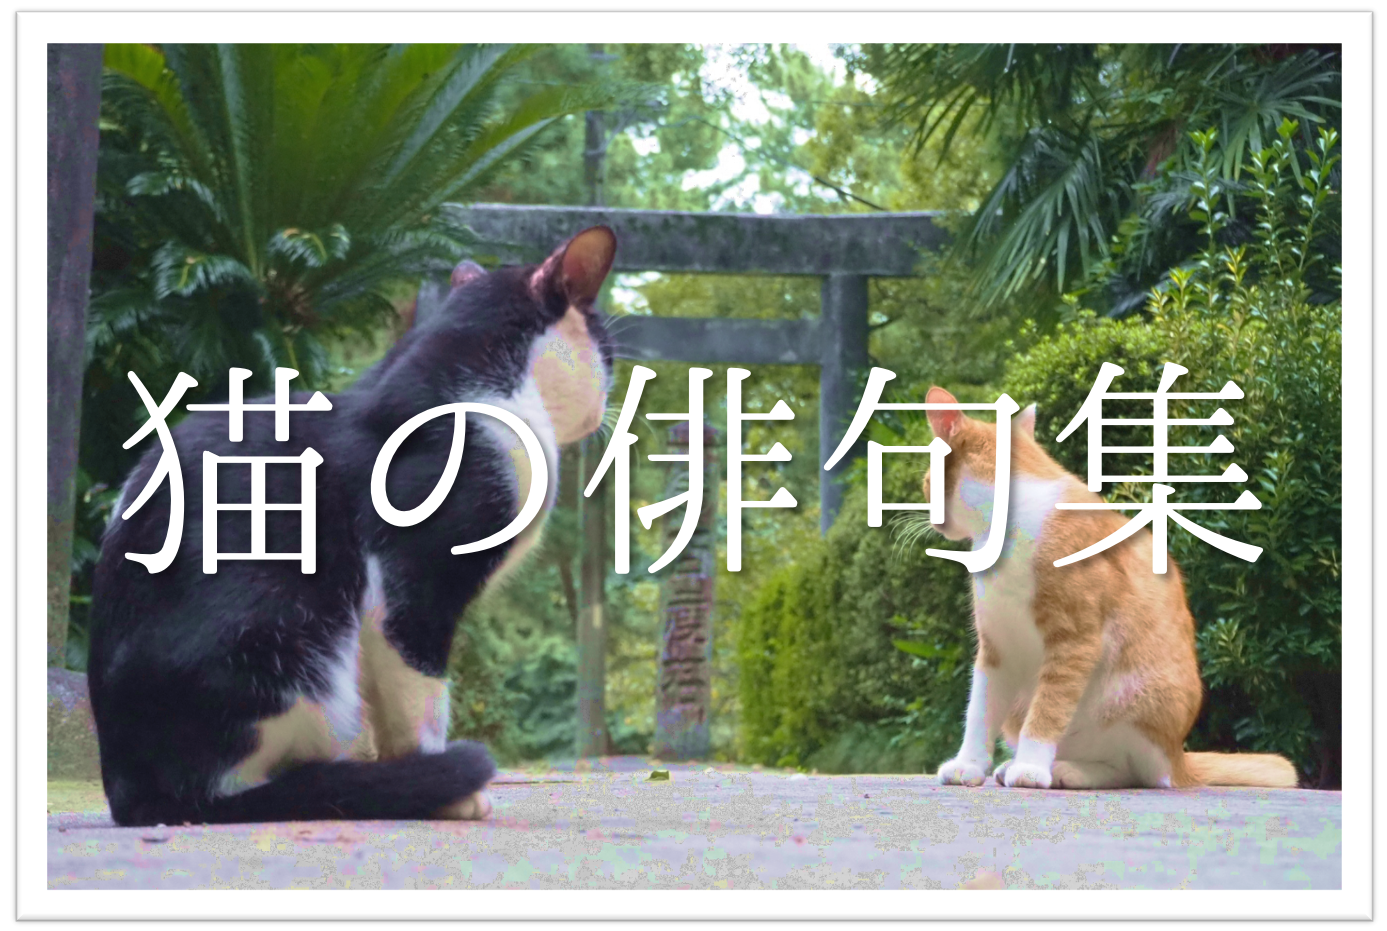 猫をテーマに詠んだ俳句 選 猫好き必見 可愛らしい 面白い俳句を紹介 俳句の教科書 俳句の作り方 有名俳句の解説サイト